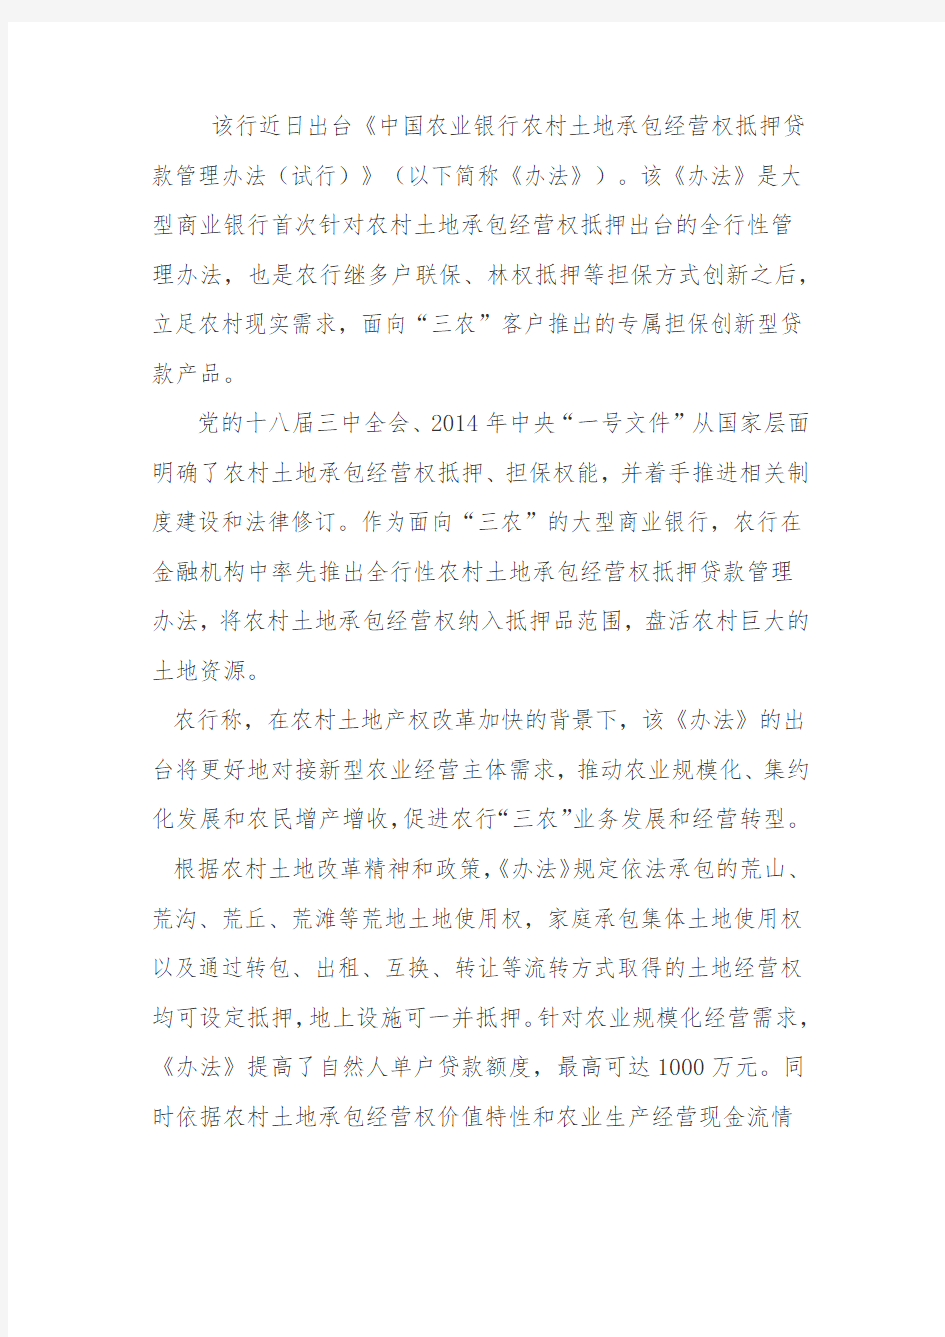 中国农业银行林权抵押贷款管理办法(试行)